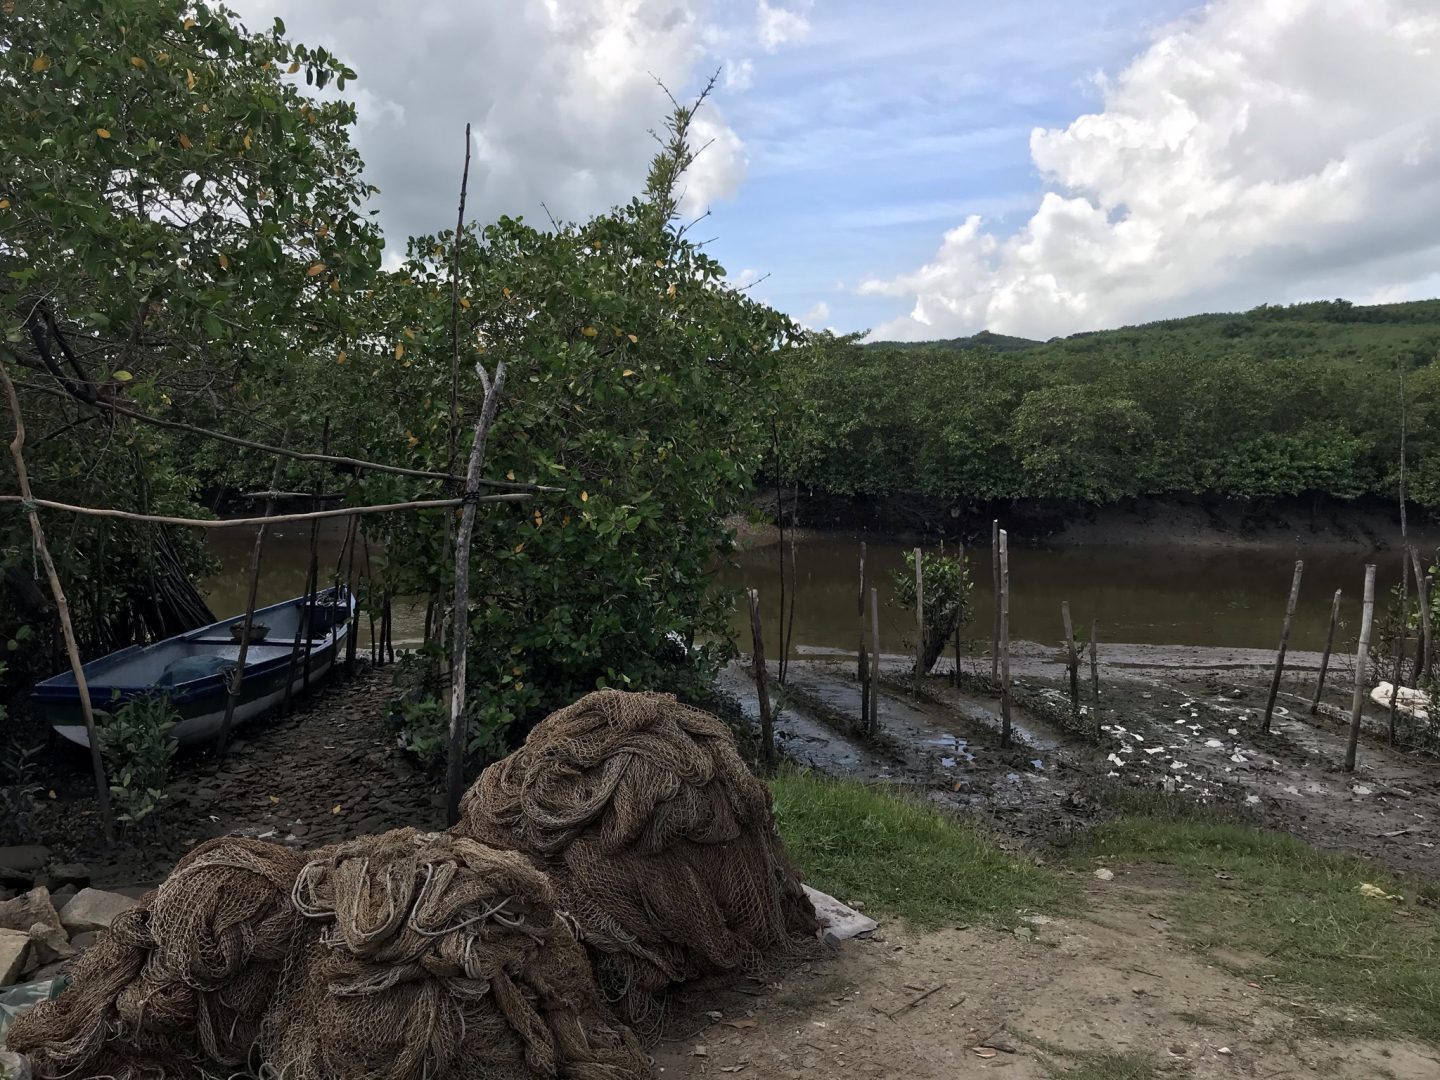 Três montes de redes de pesca artesanal em frente a uma canoa, na beira de um rio.